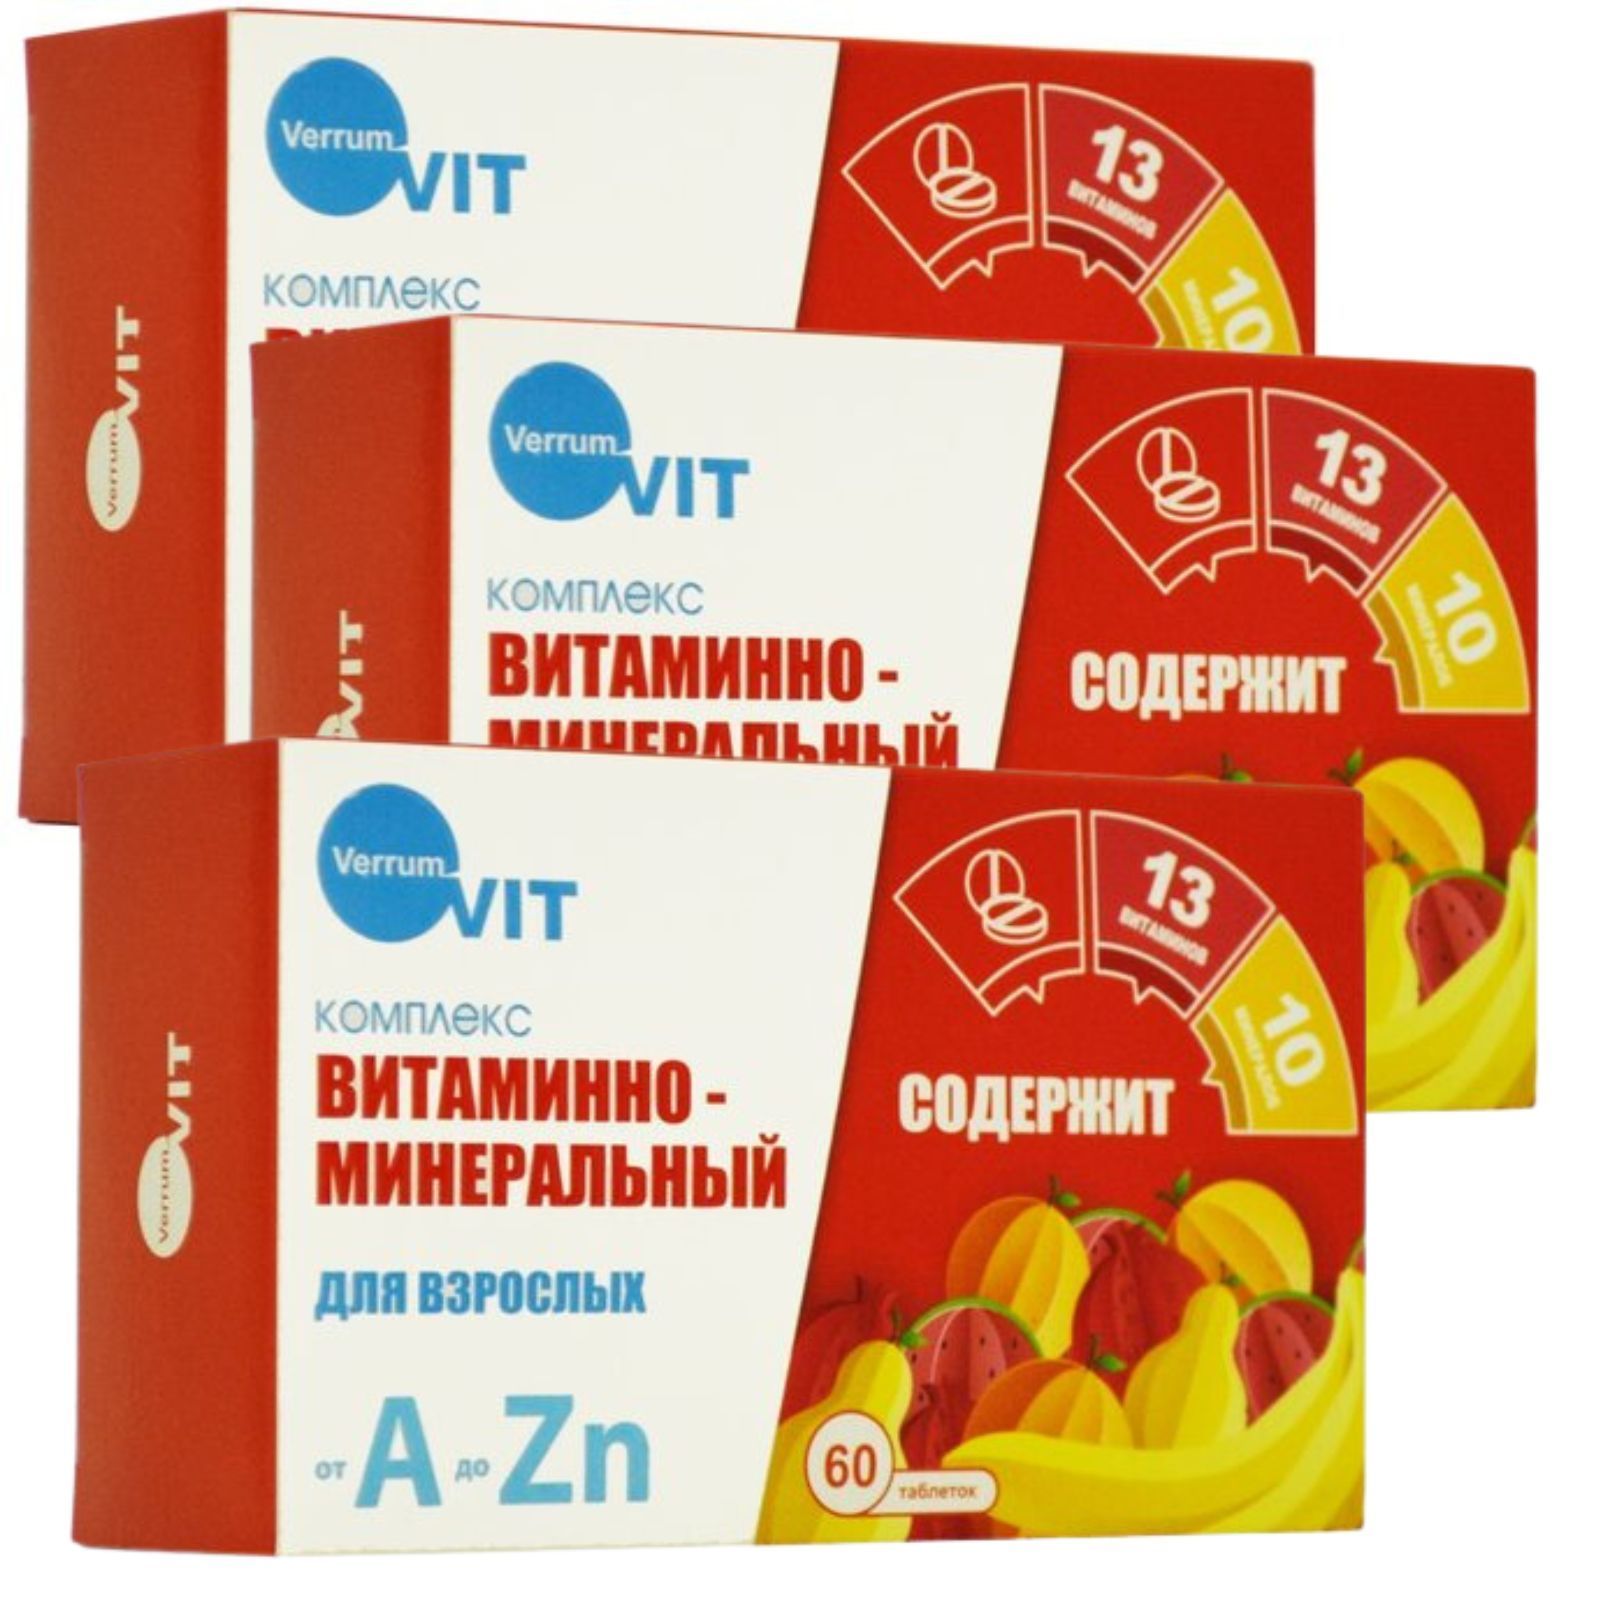 Витаминный комплекс a zn таблетки для мужчин. Витаминно-минеральный комплекс от а до ZN. Таблетки от а до ZN. Витаминно-минеральный комплекс от а до ZN квадрат-с отзывы.